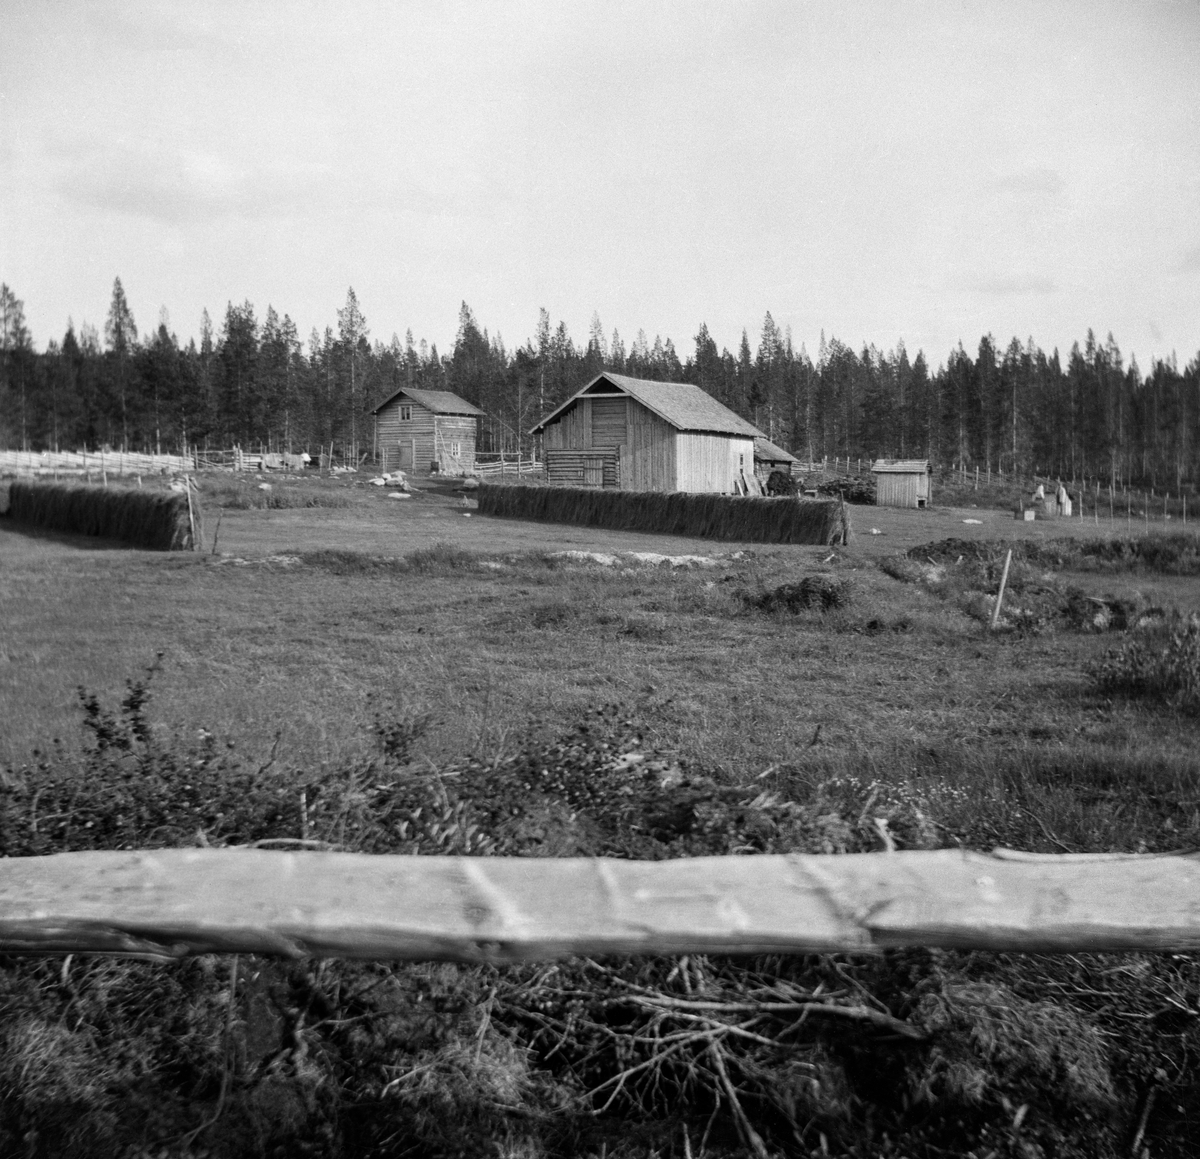 Småbruket Myrvang i i Engerdal. Dette bruket ble bygslet i 1902 av Gjertrud Myrvang (1861-1958) og Per P. Myrvang- (1864-1943).  Bildet er tatt mot bygningene fra utkanten av det ryddete området, med en horisontal kløvd trestamme i forgrunnen. Gjertrud og Per hadde to hus - et halvannenetasjes våningshus med snaut 20 kvadratmeters grunnflate og en fjøs-, stall- og låvebygning med drøyt 100 kvadratmeters grunnflate. Da dette fotografiet ble tatt hadde Gjertrud og Per skått graset som vokste på den dyrkede marka nærmest bygningene og reist hesjer for å tørke høy til vintersesongen. Innmarka er skjermet med en skigard mot nåleskogen i bakgrunnen.